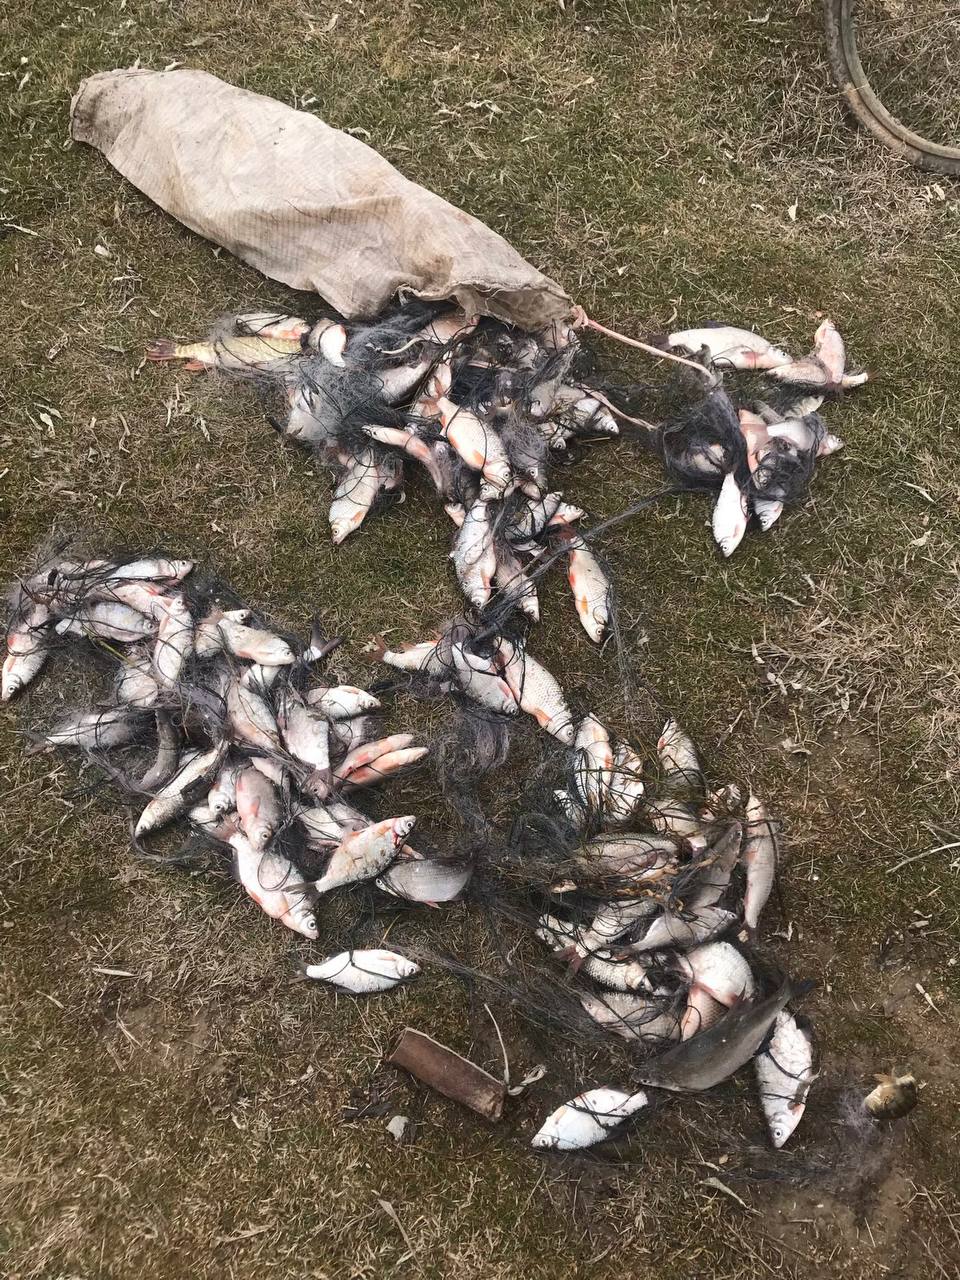 Майже чотири мільйони гривень збитків завдано рибному господарству на Одещині лише за І квартал